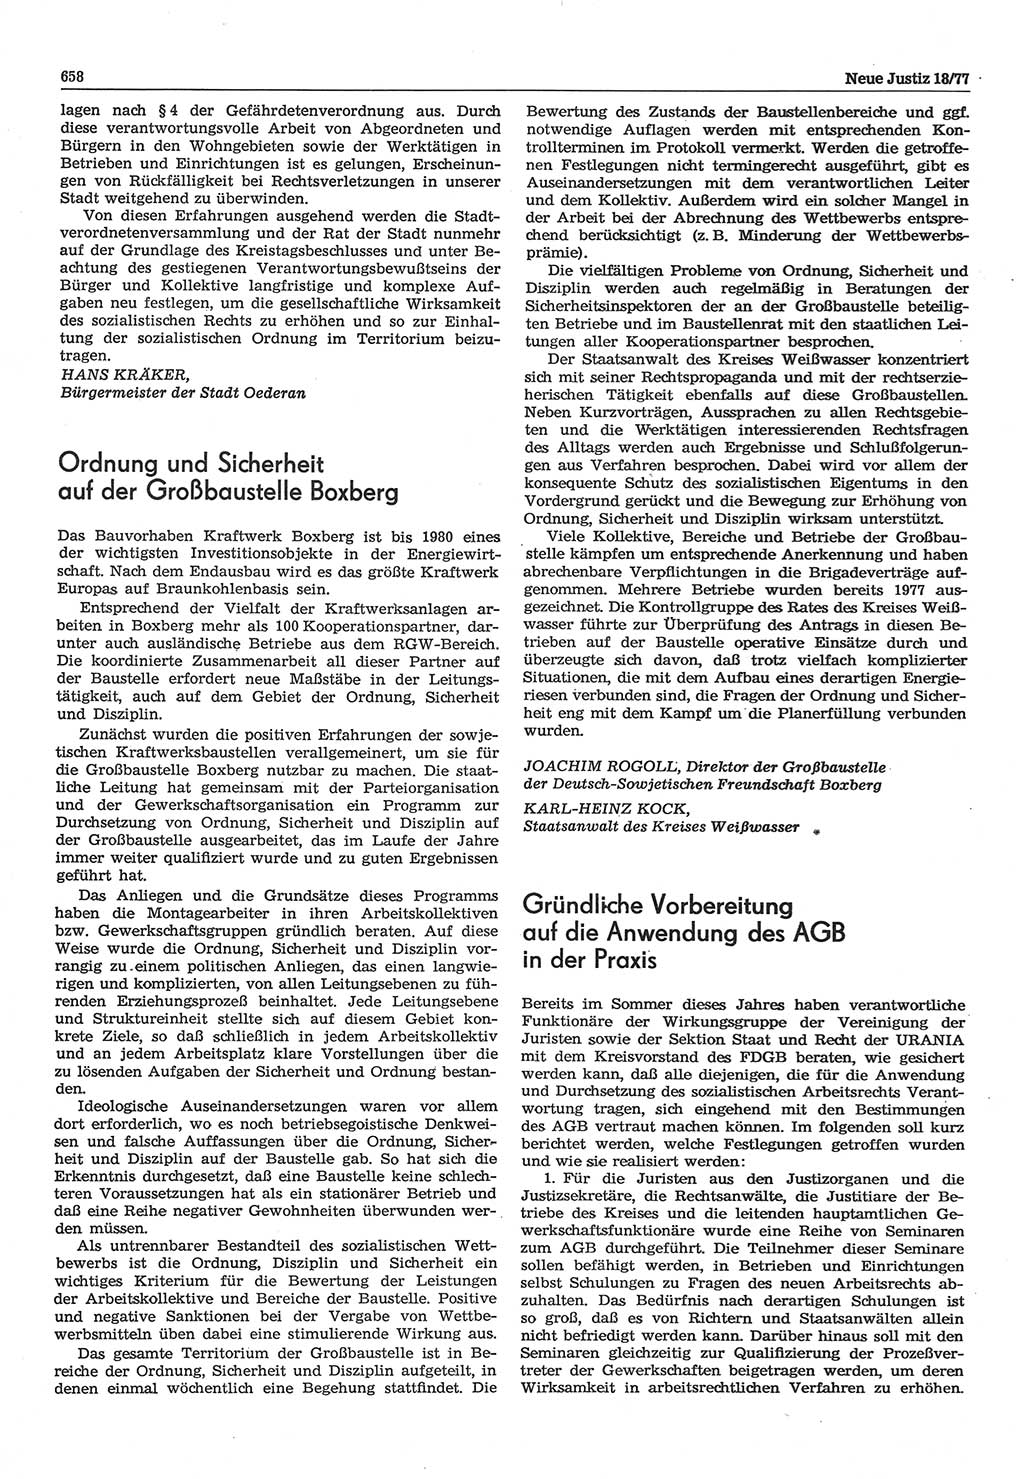 Neue Justiz (NJ), Zeitschrift für Recht und Rechtswissenschaft-Zeitschrift, sozialistisches Recht und Gesetzlichkeit, 31. Jahrgang 1977, Seite 658 (NJ DDR 1977, S. 658)